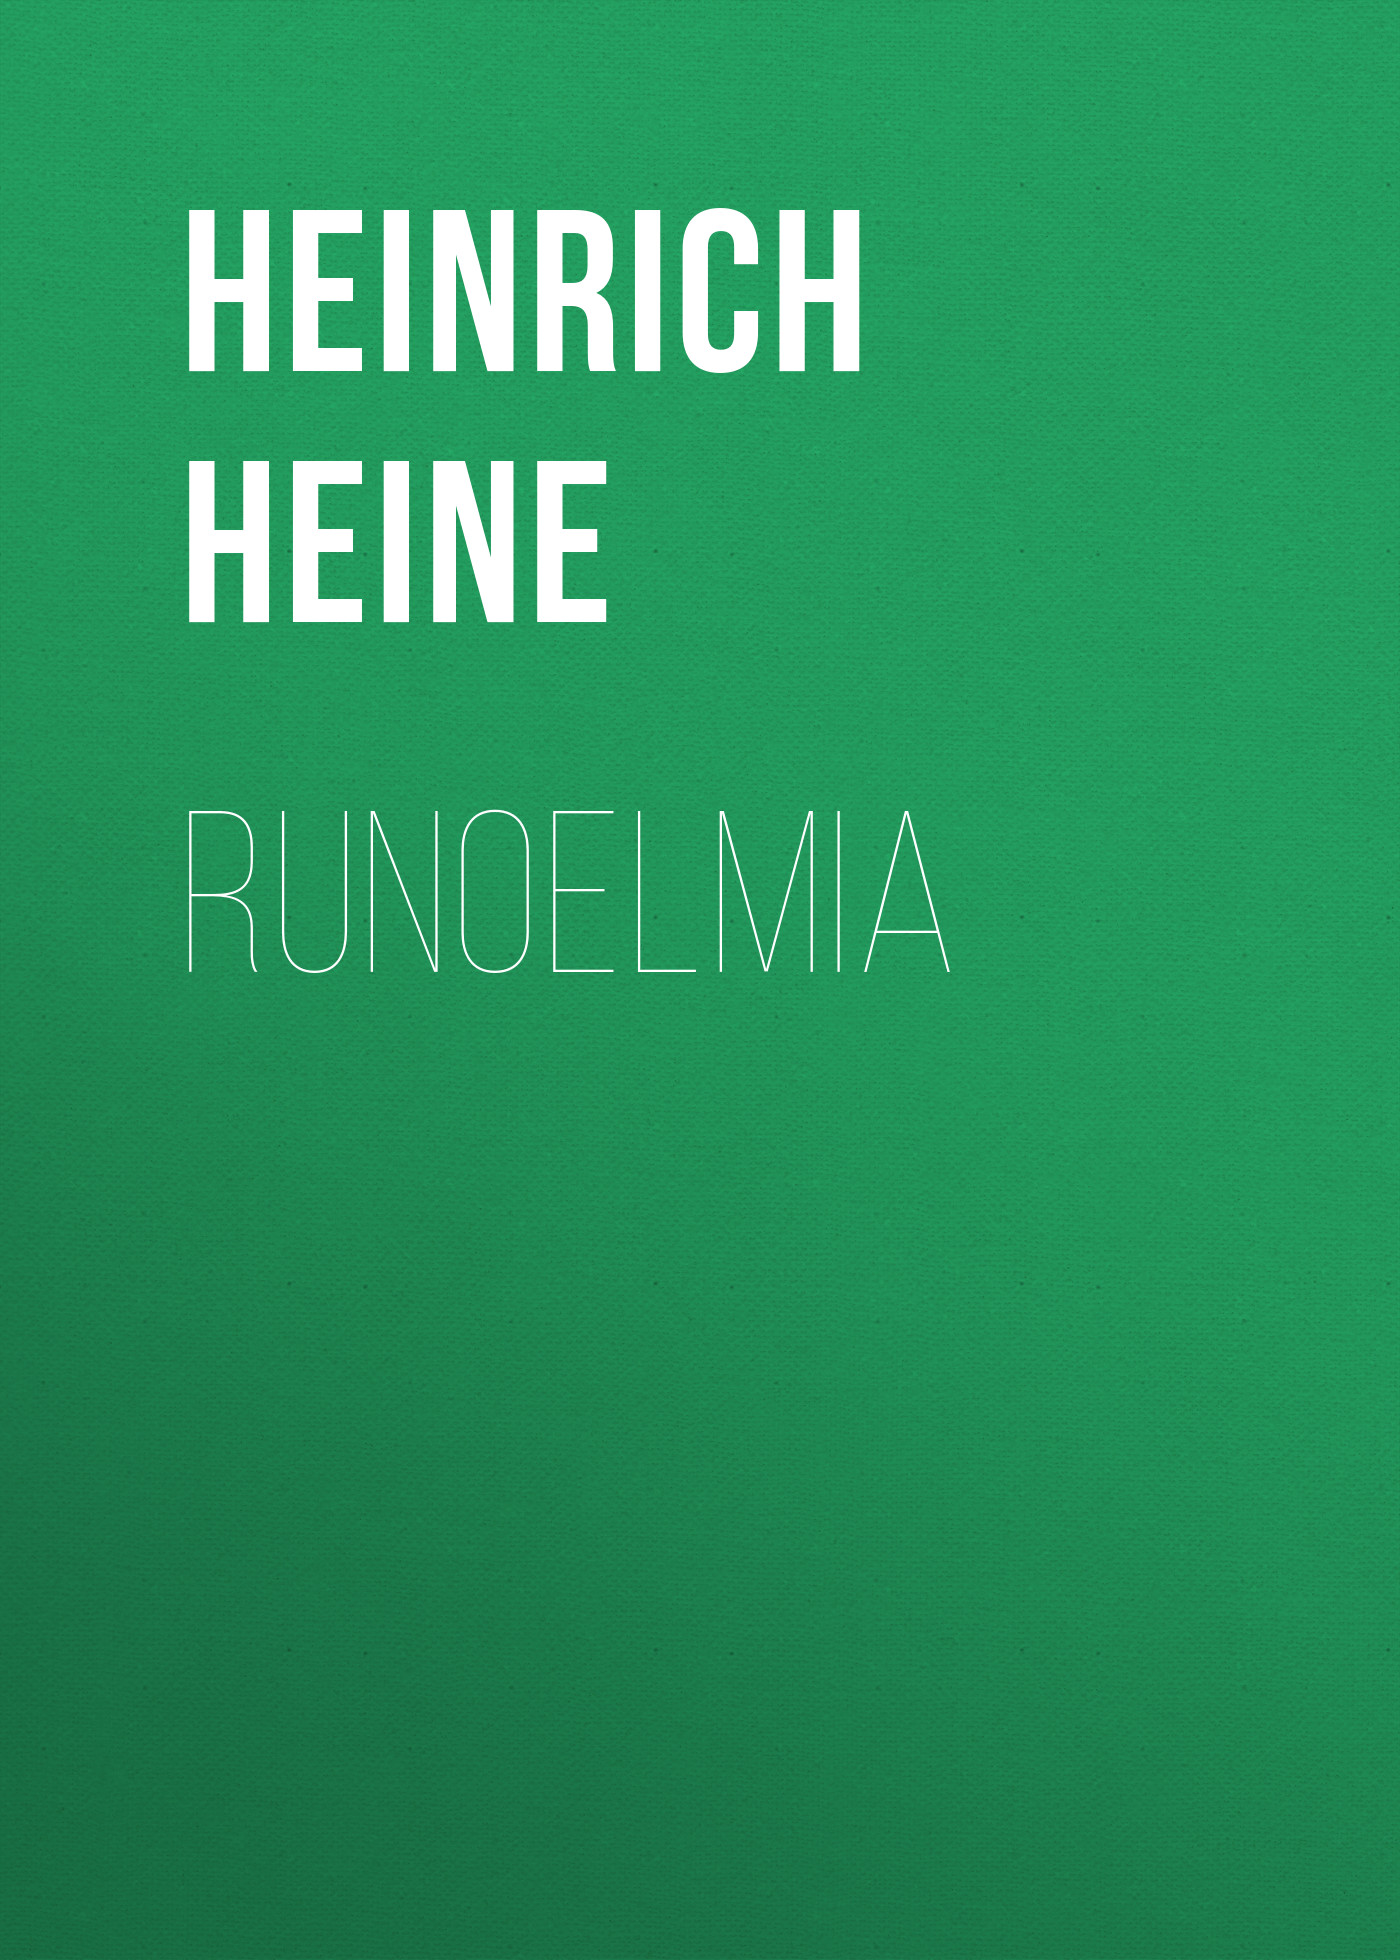 Книга Runoelmia из серии , созданная Генрих Гейне, может относится к жанру Зарубежные стихи, Литература 19 века, Поэзия, Зарубежная старинная литература, Зарубежная классика. Стоимость электронной книги Runoelmia с идентификатором 36095933 составляет 0 руб.